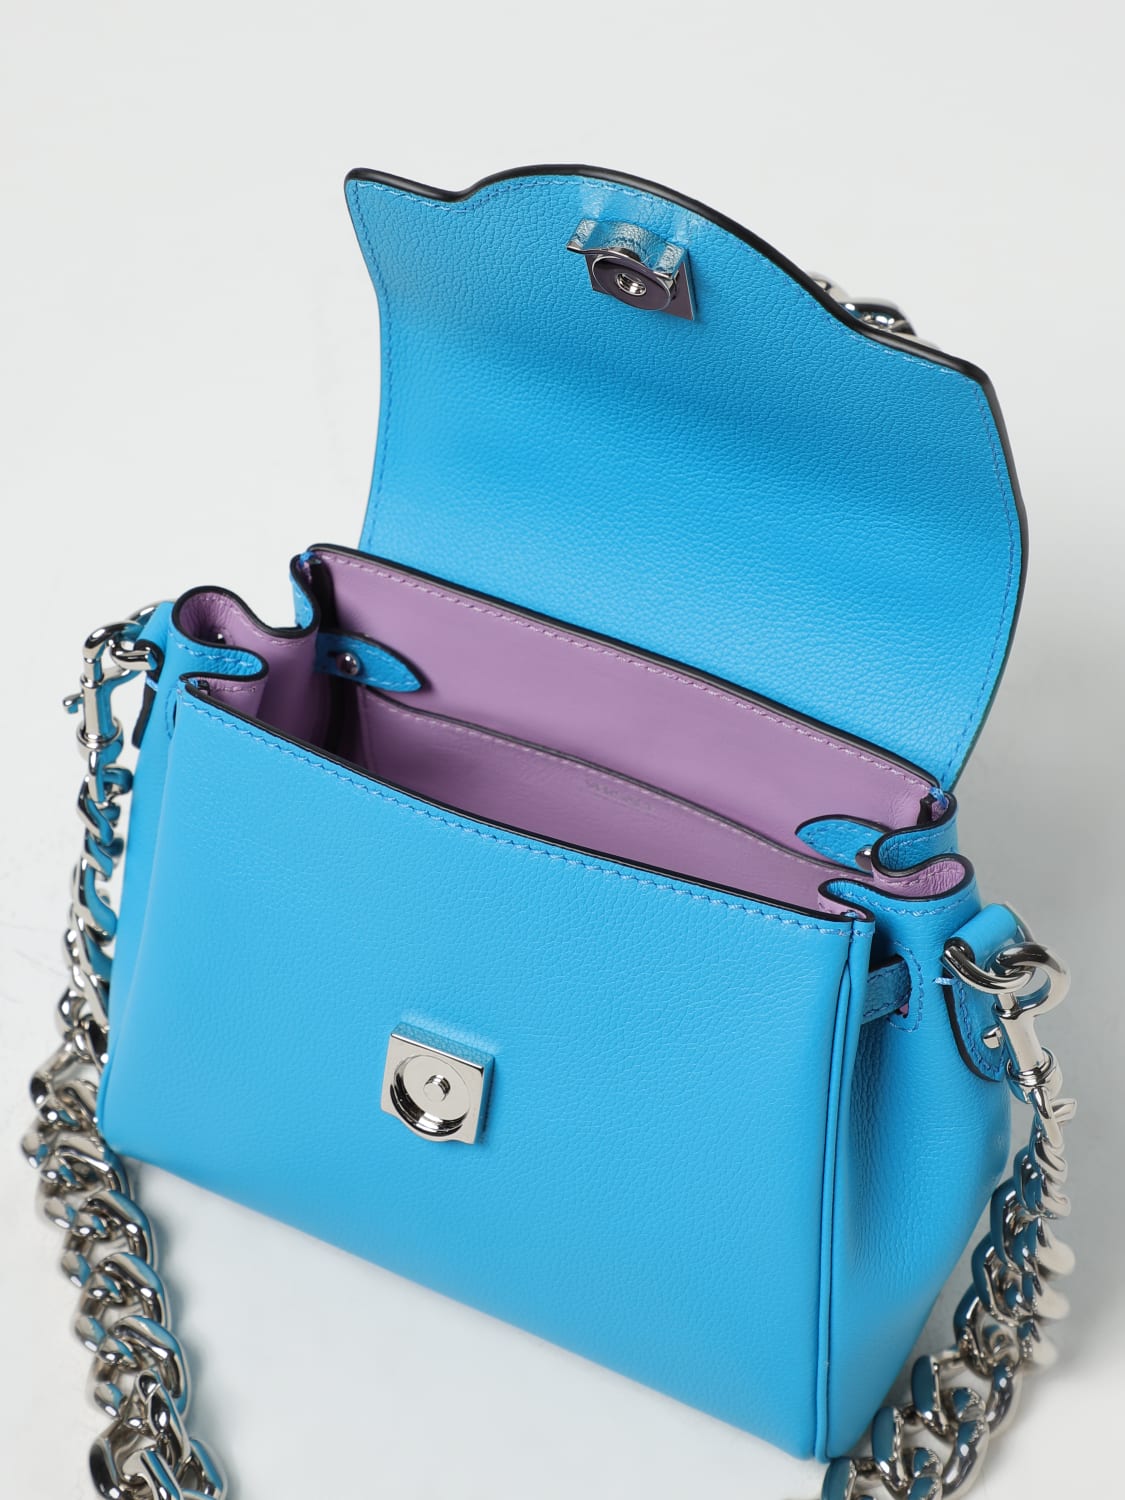 La Medusa Small Handbag  Small handbags, Handbag, Blue purse